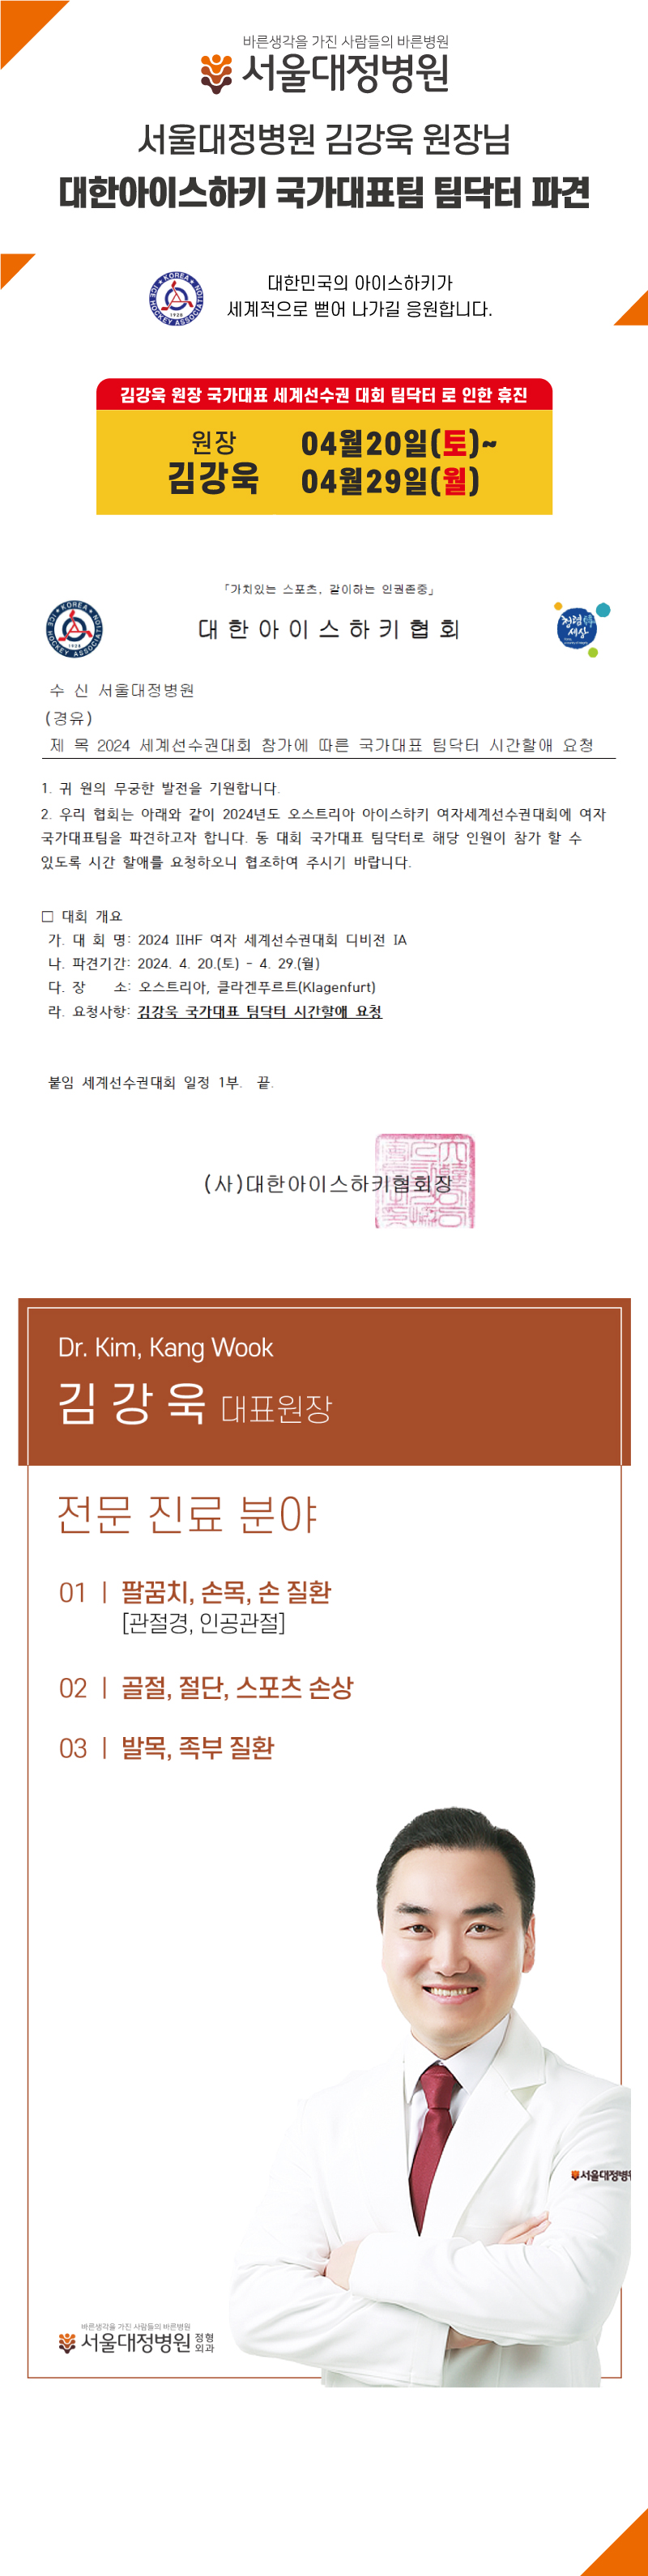 김강욱---아이스하키-국가대표-세계선수권대회-팀닥터-파견.jpg